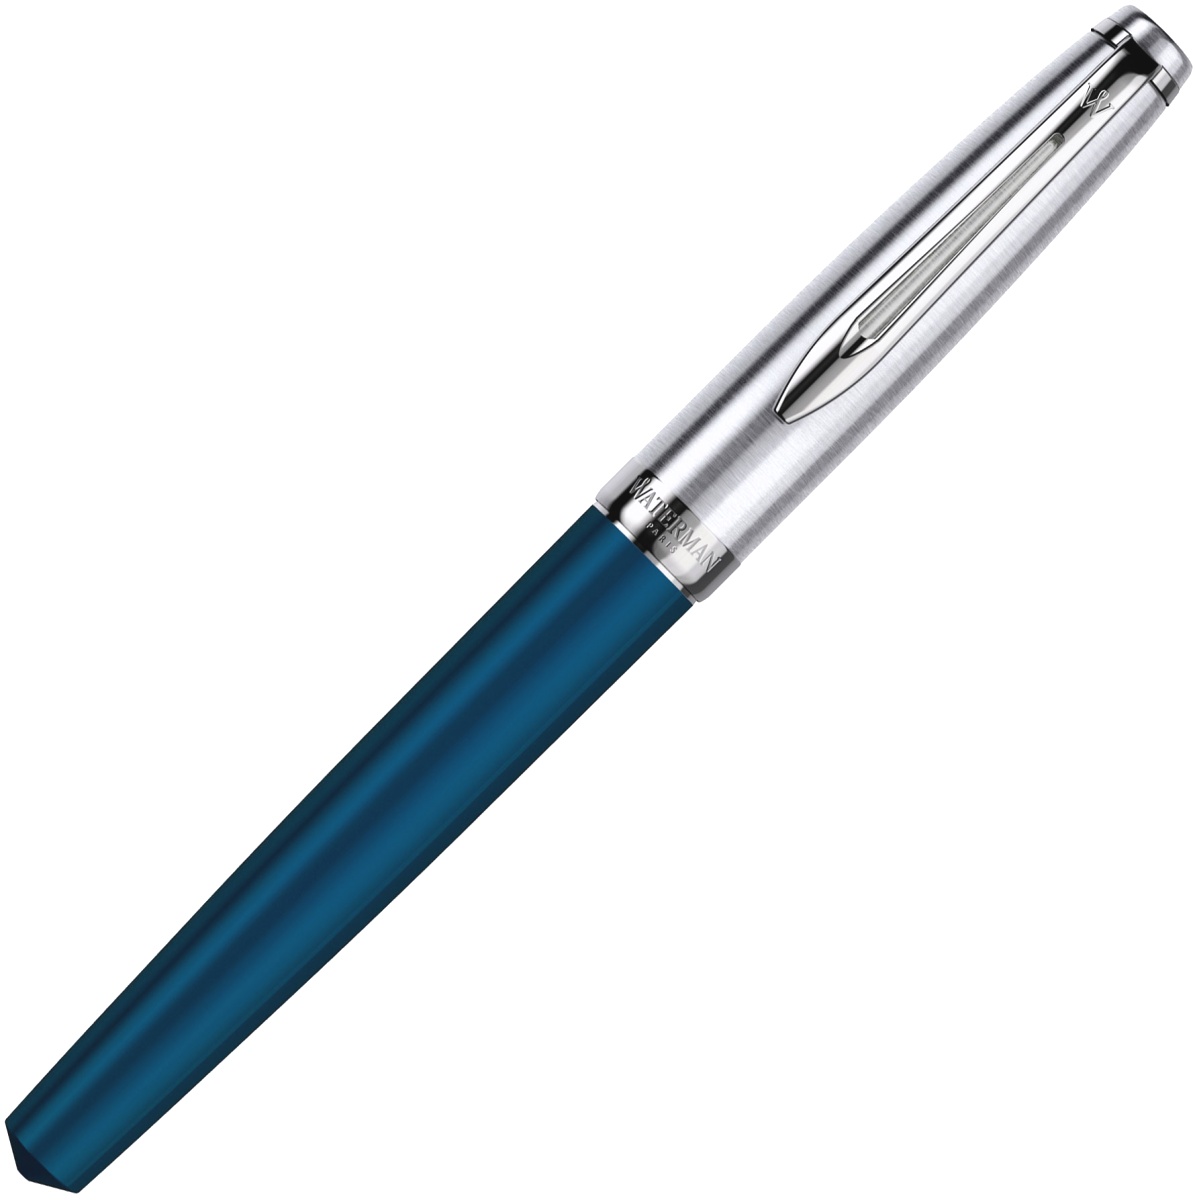  Ручка перьевая Waterman Embleme, Blue CT (Перо F), фото 2